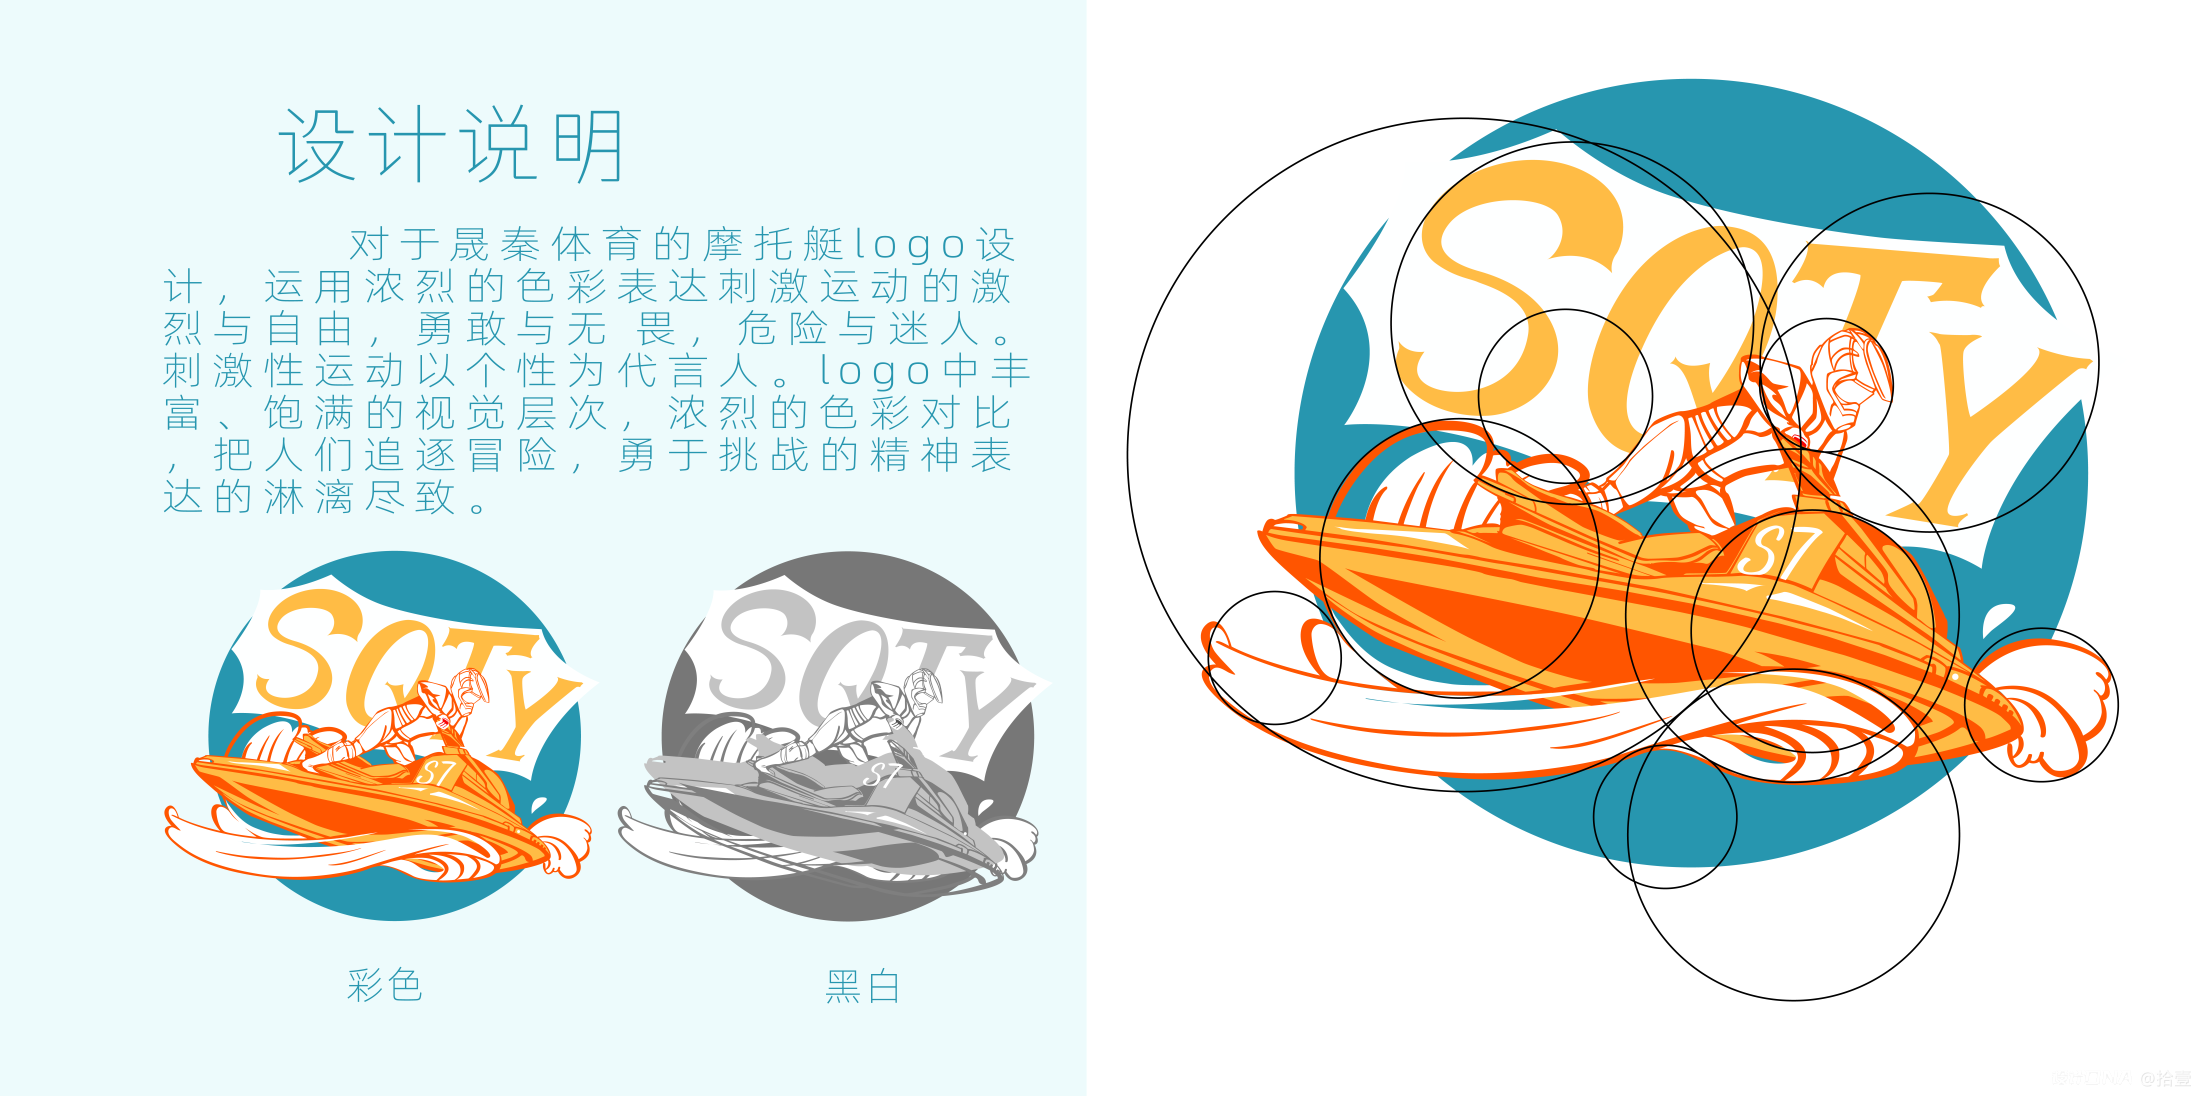 晟秦体育摩托艇logo 图1